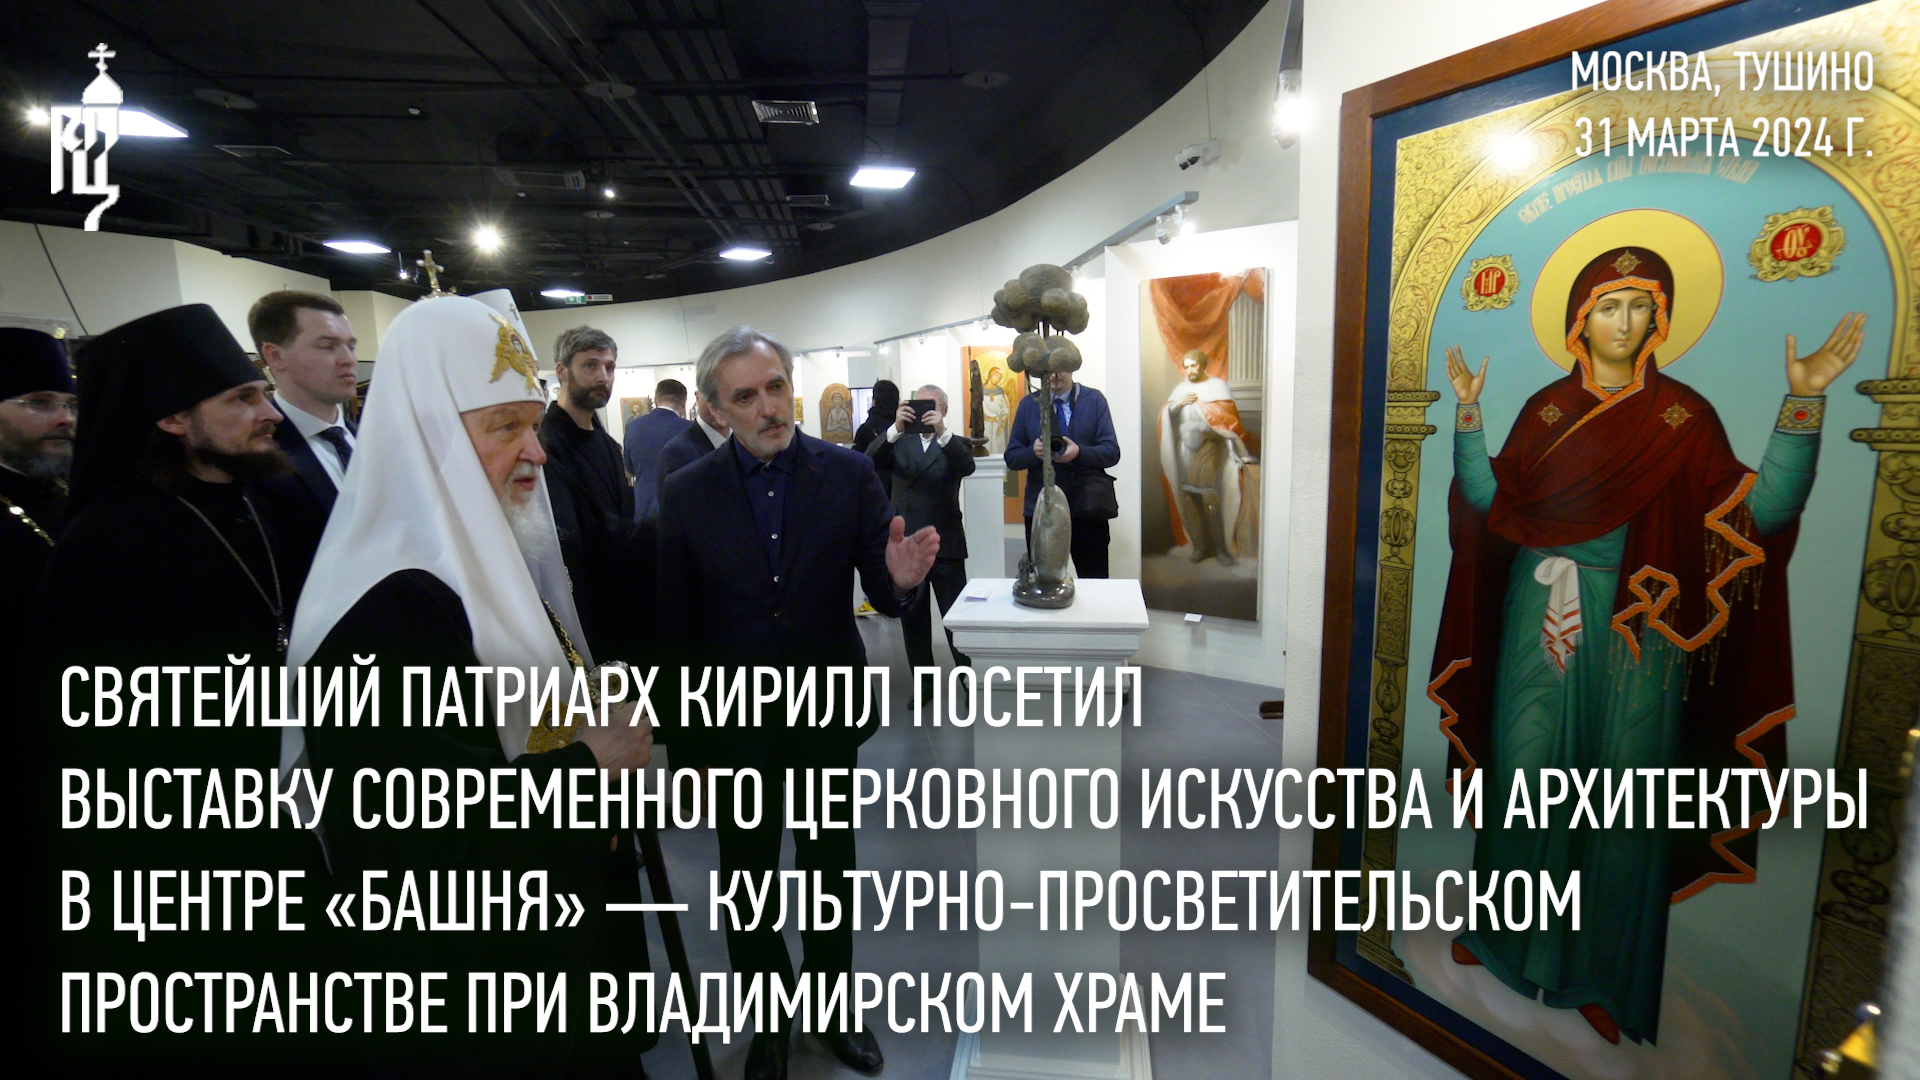 Святейший Патриарх Кирилл посетил выставку современного церковного искусства и архитектуры